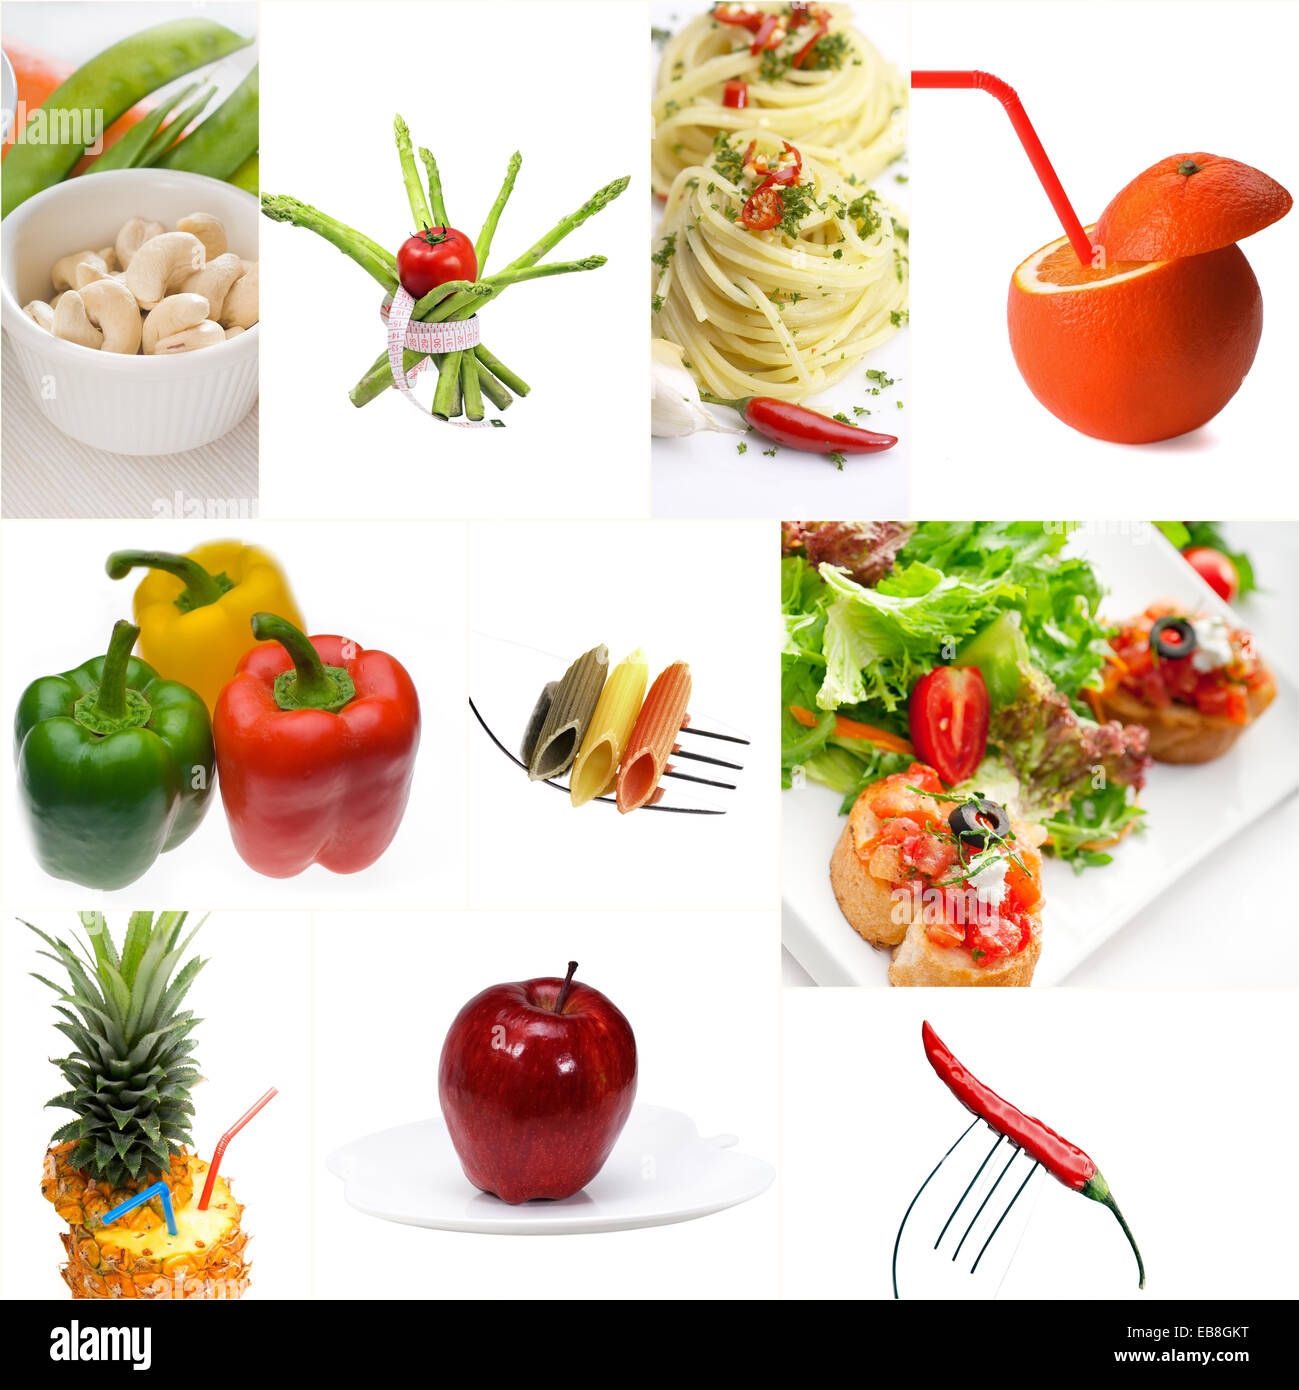 Organica Vegana Vegetariana alimenti dietetici collage luminose umore Foto Stock